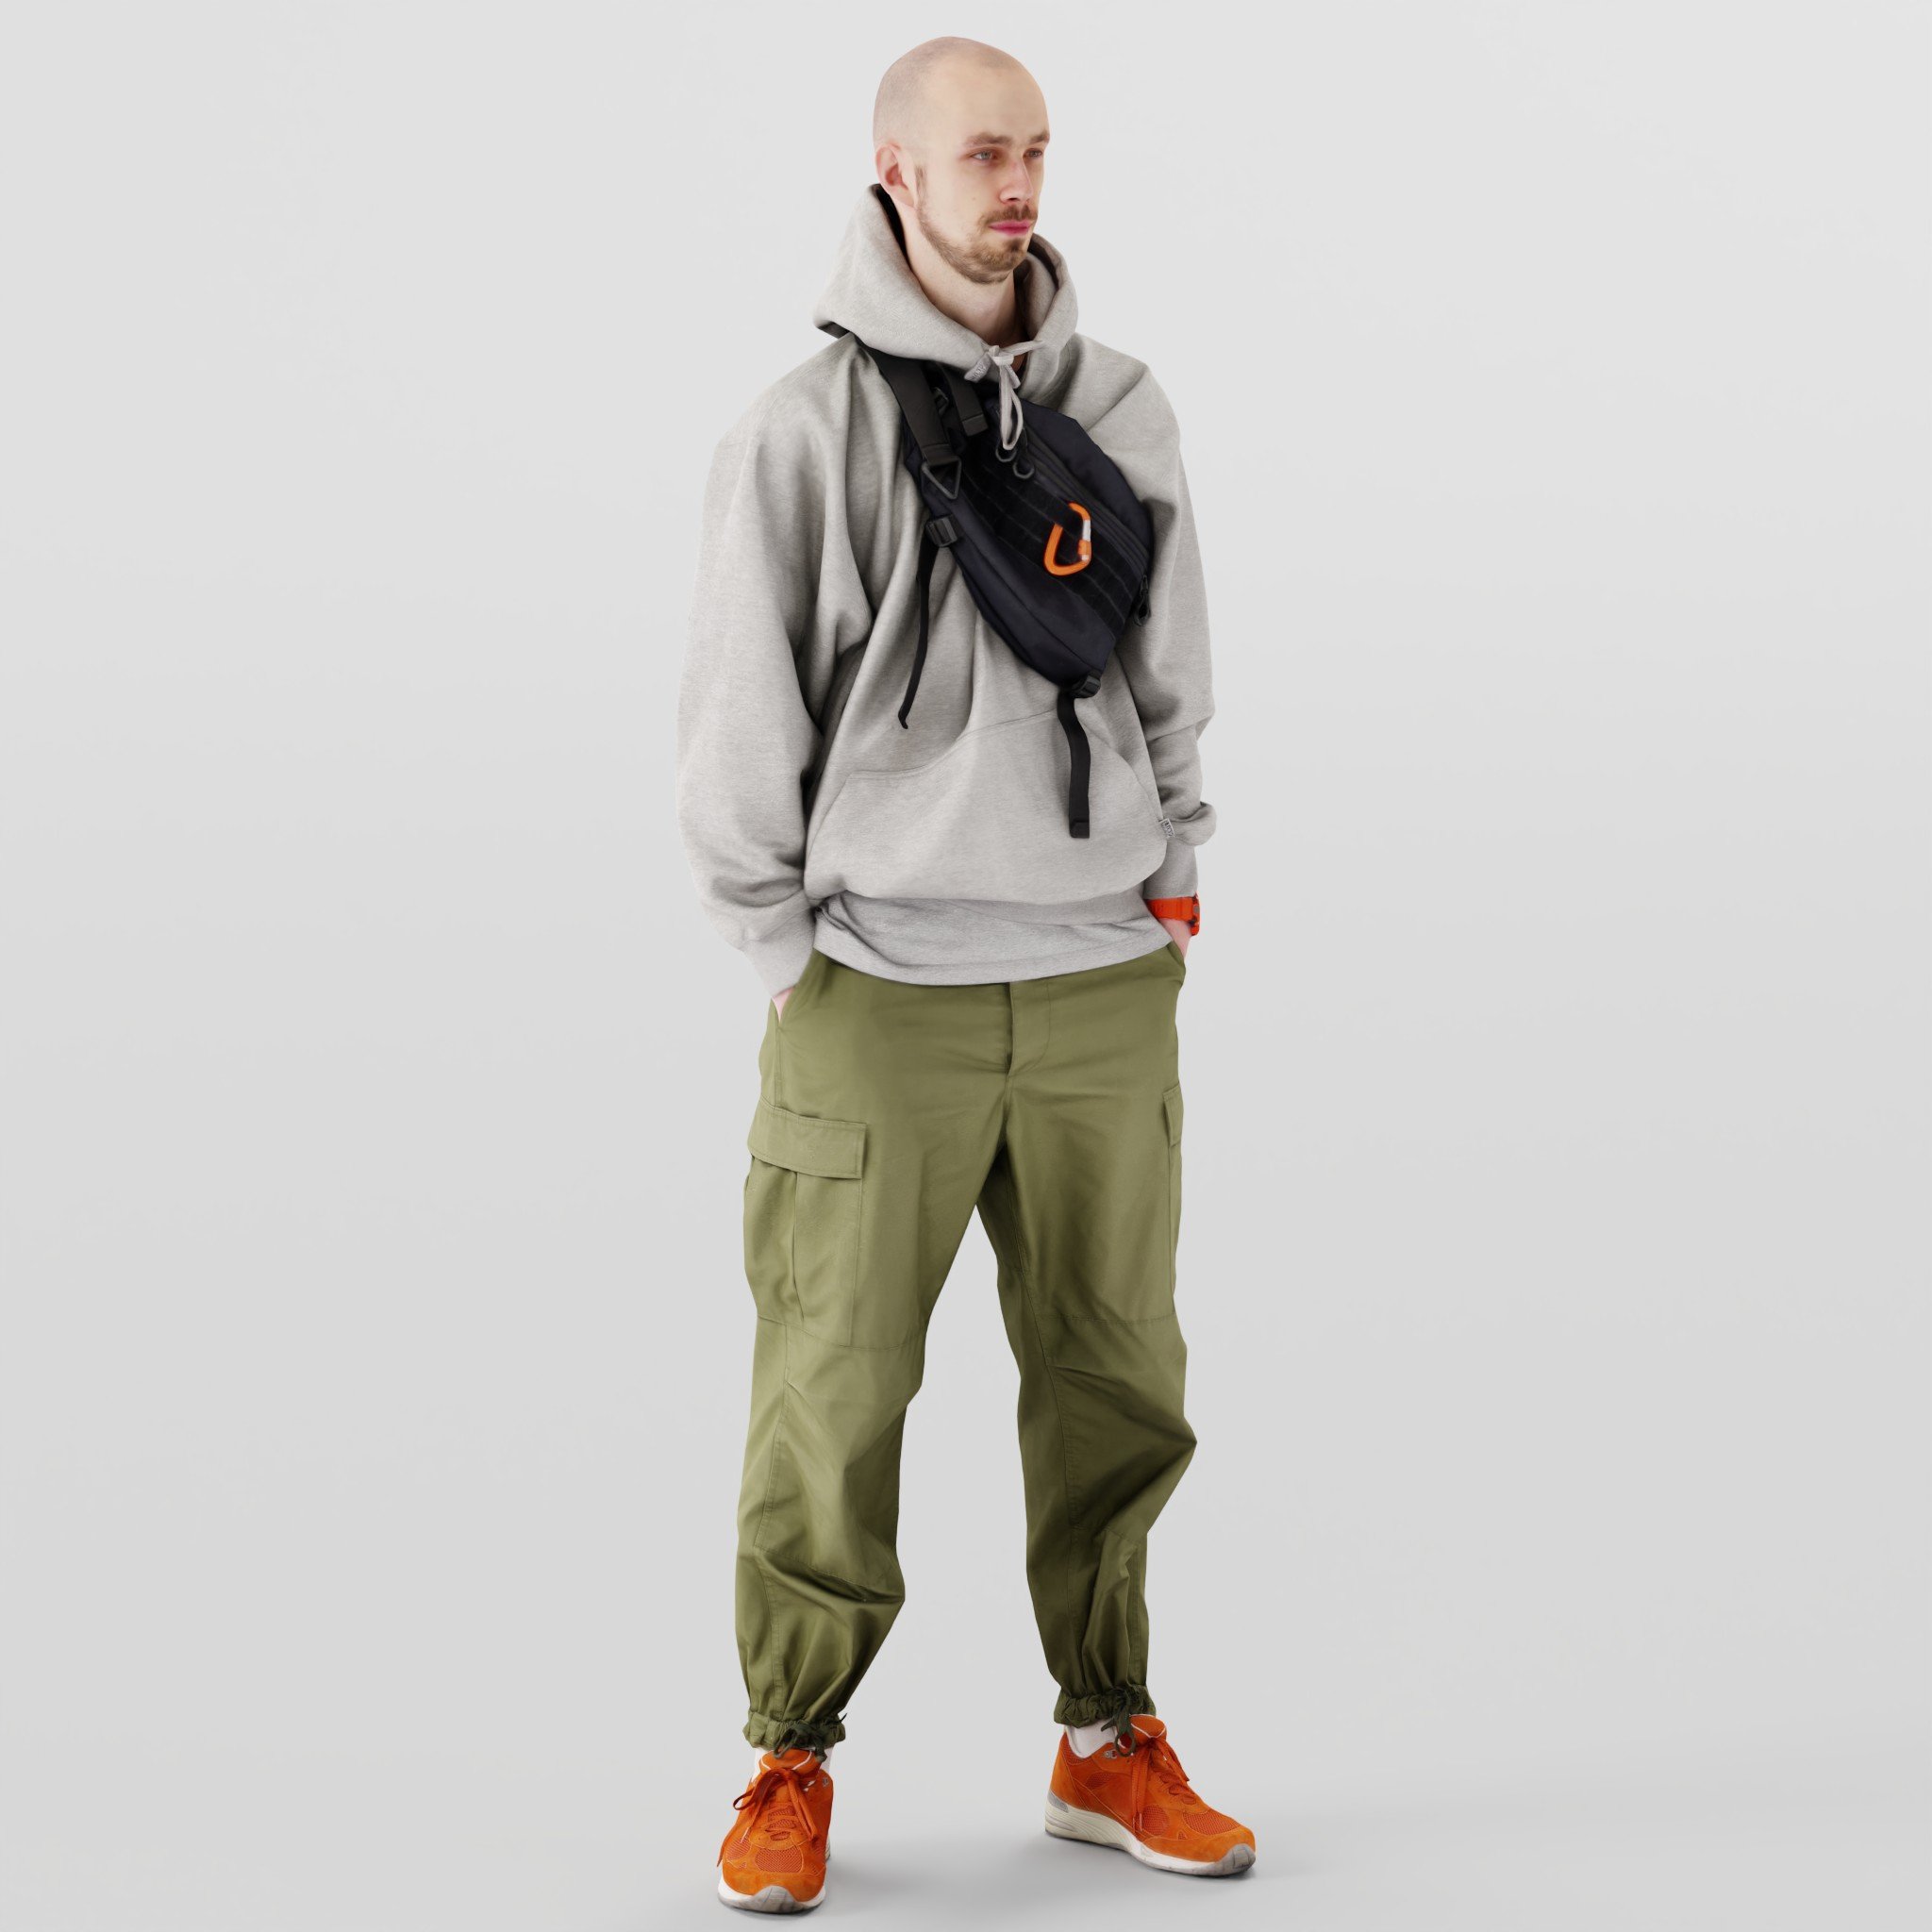 Young Bald Tall Man | 3D Men models | BlenderKit